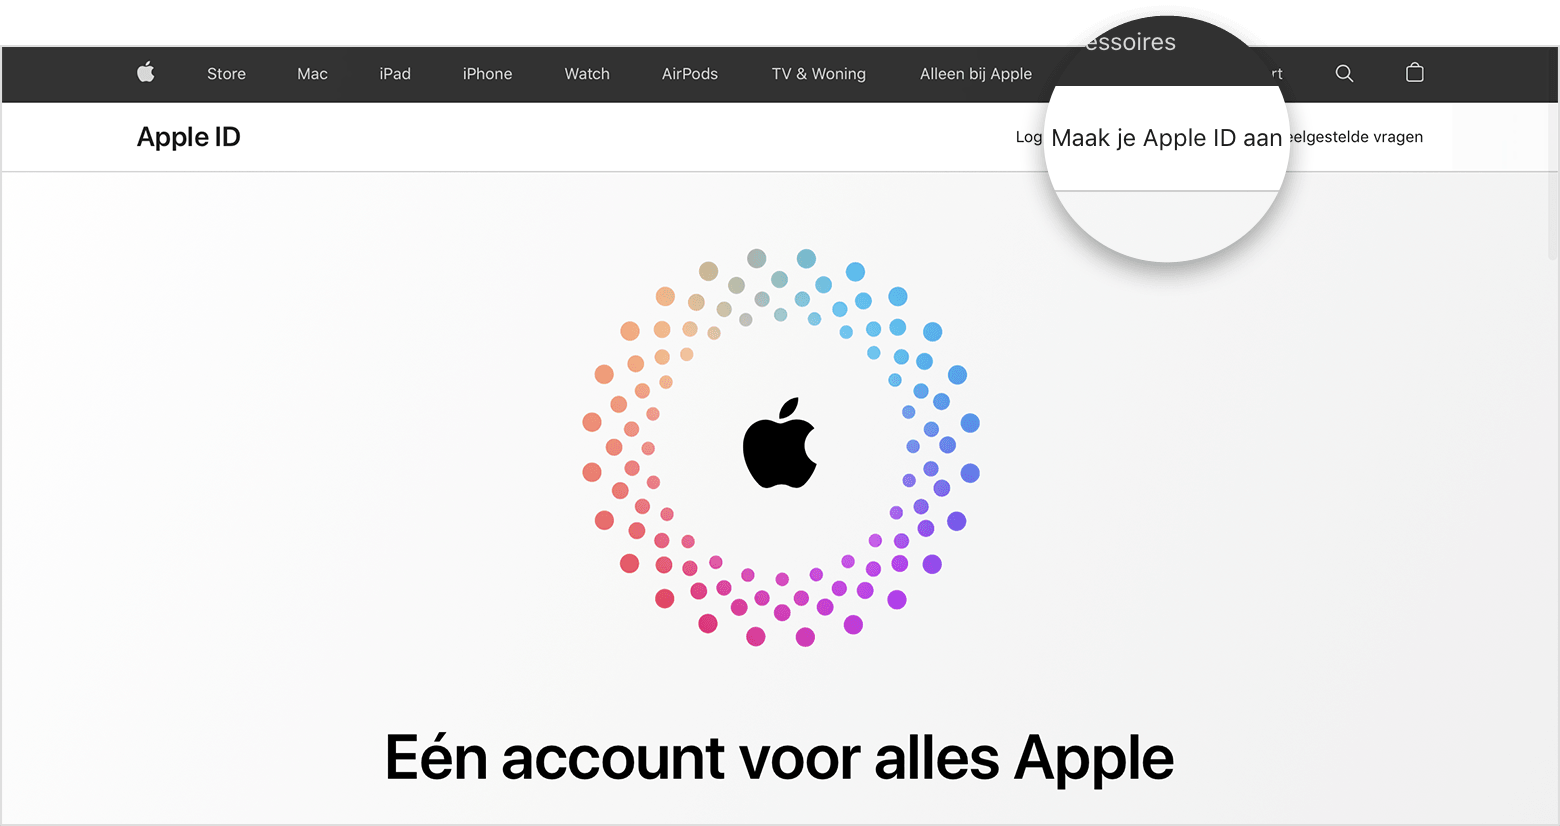 Schermafbeelding van appleid.apple.com, met in het midden een Apple logo omringd door concentrische gekleurde cirkels.